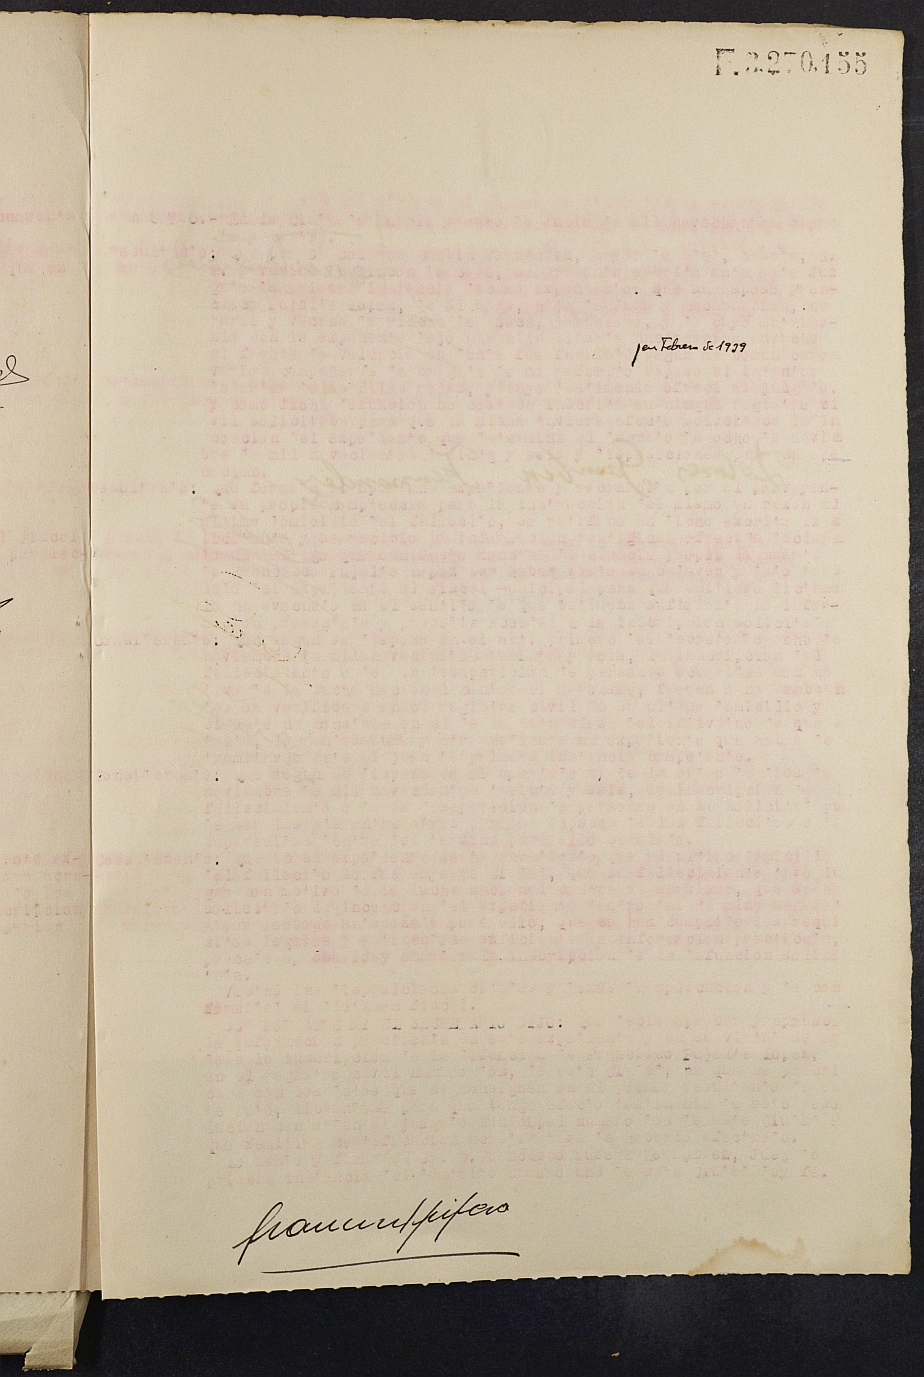 Expediente nº 480/1944 del Juzgado de Primera Instancia de Murcia para la inscripción en el Registro Civil por la defunción de Francisco Pujalte López